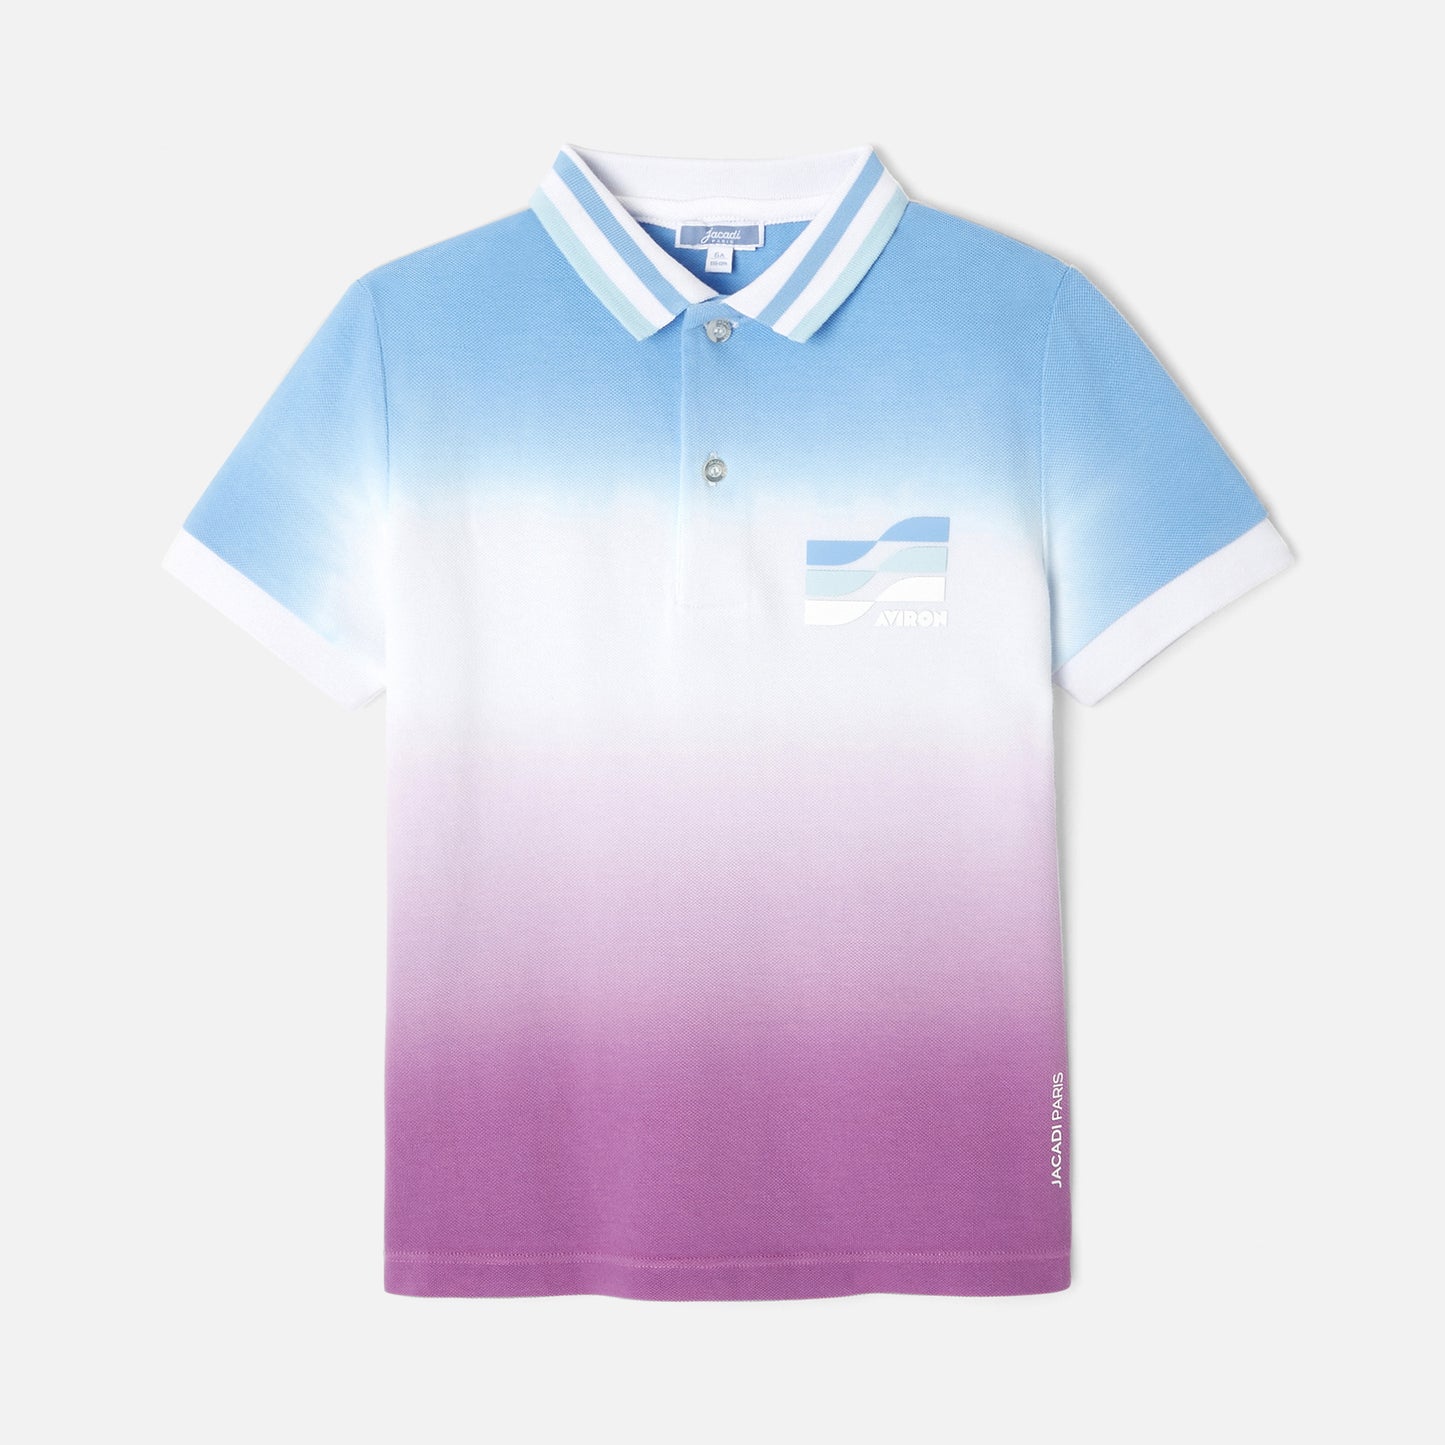 PRAX - グラデーションカラー半袖ポロシャツ